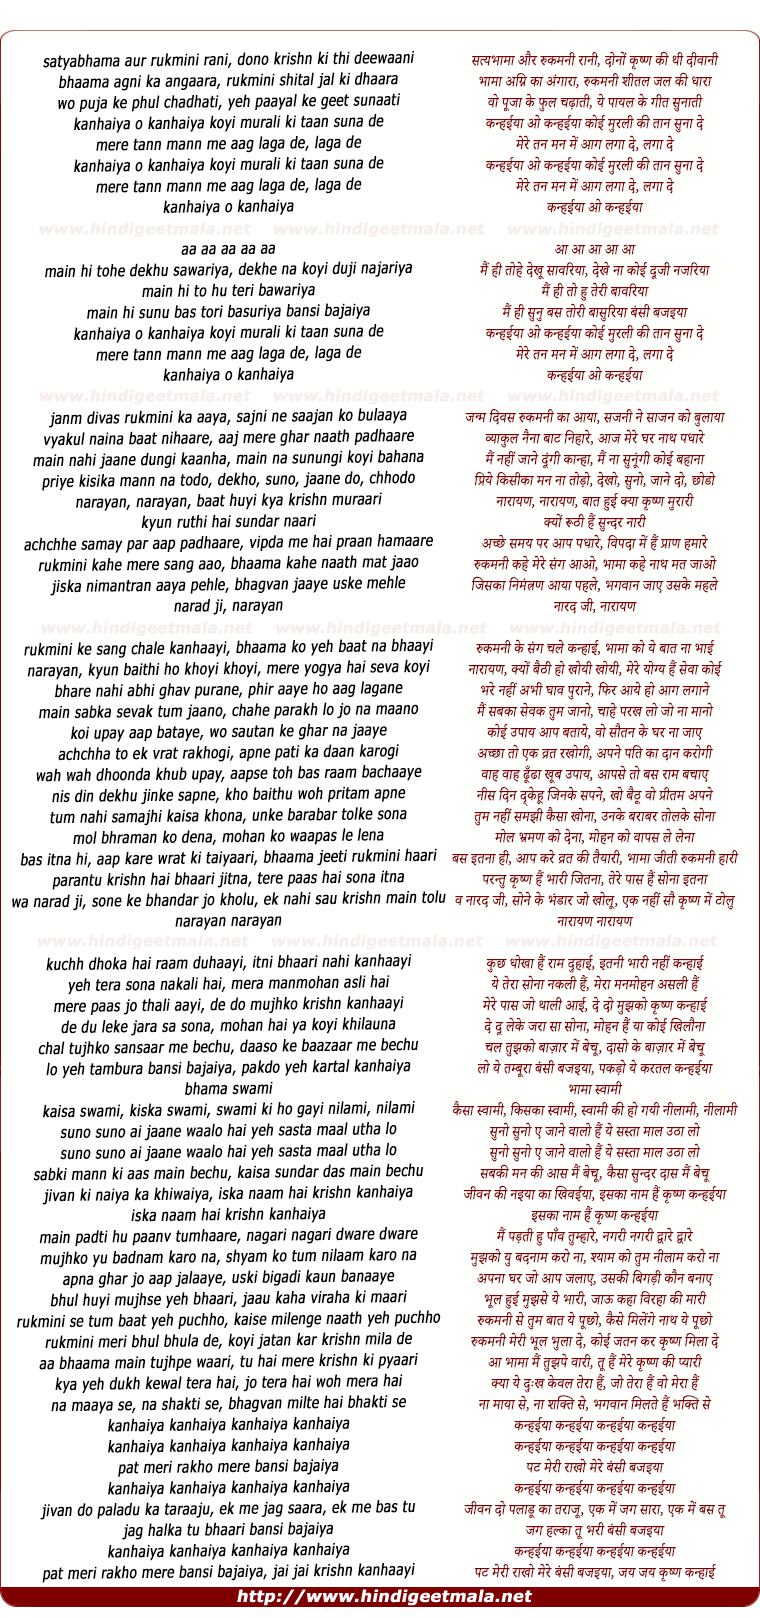 lyrics of song Kanhaiya O Kanhaiya